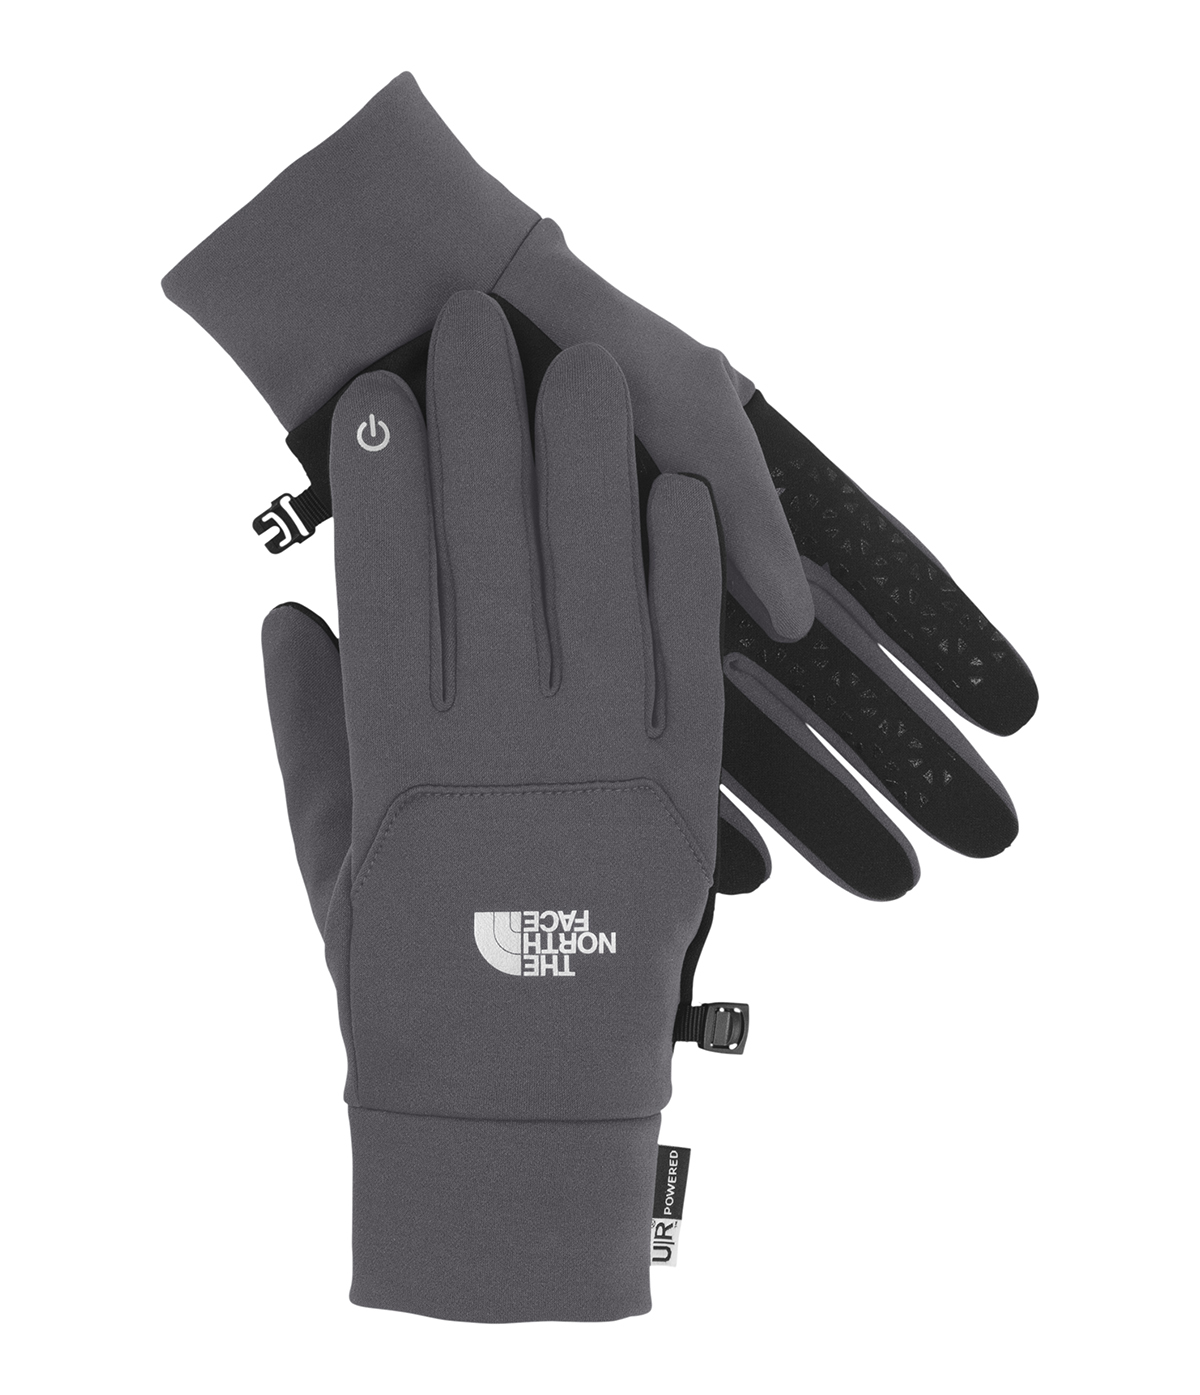 ETip gloves